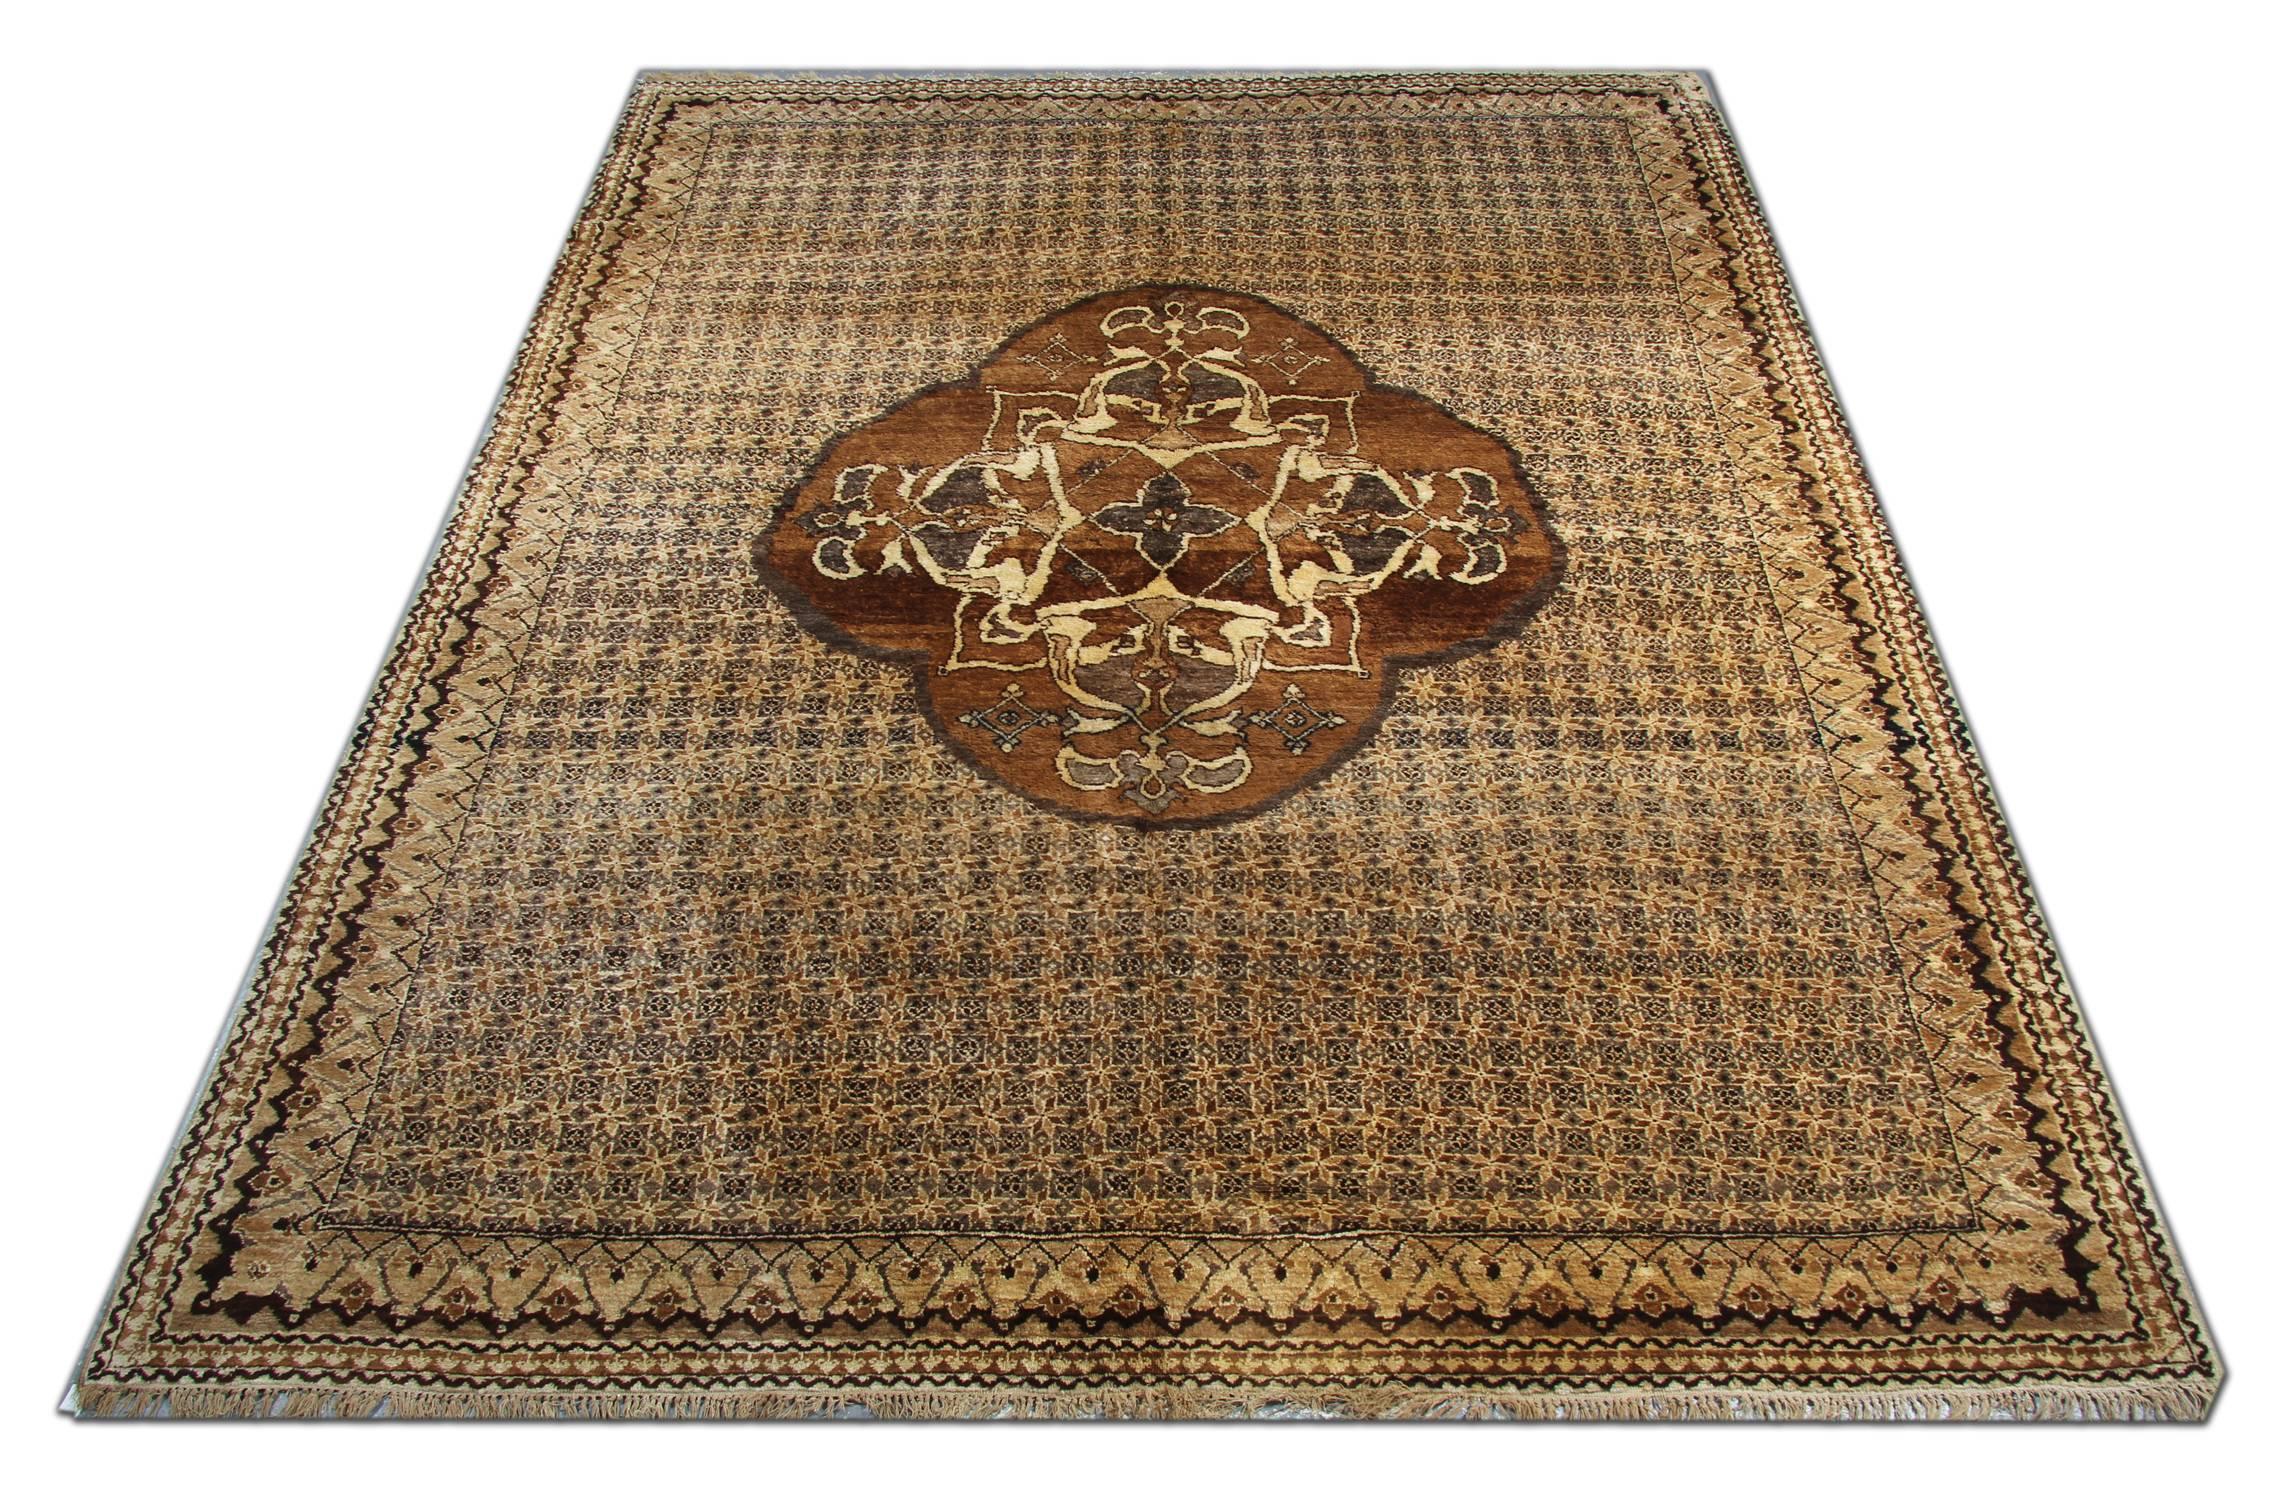 Dieser handgefertigte, antike Teppich ist ein türkischer, brauner Teppich mit zentralem Medaillon und hellbrauner Hintergrundfarbe. Diese luxuriösen Teppiche würden Ihr Zuhause als Bodenteppiche ergänzen. Diese großen Teppiche sehen wunderschön aus